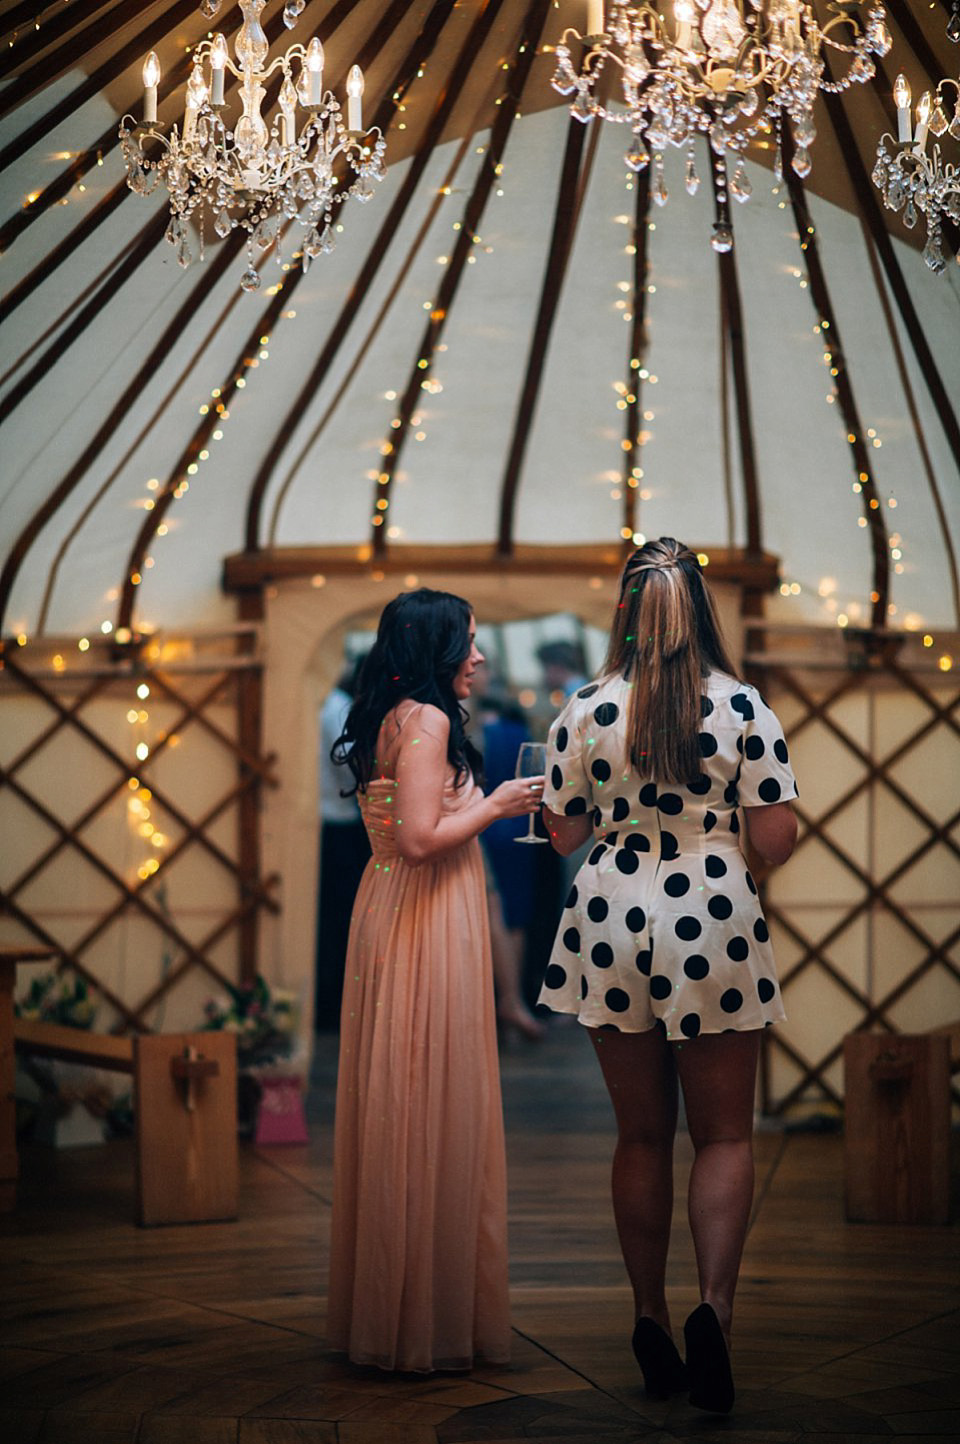 wedding yurts, jenny packam, yurts, kerry diamond photography